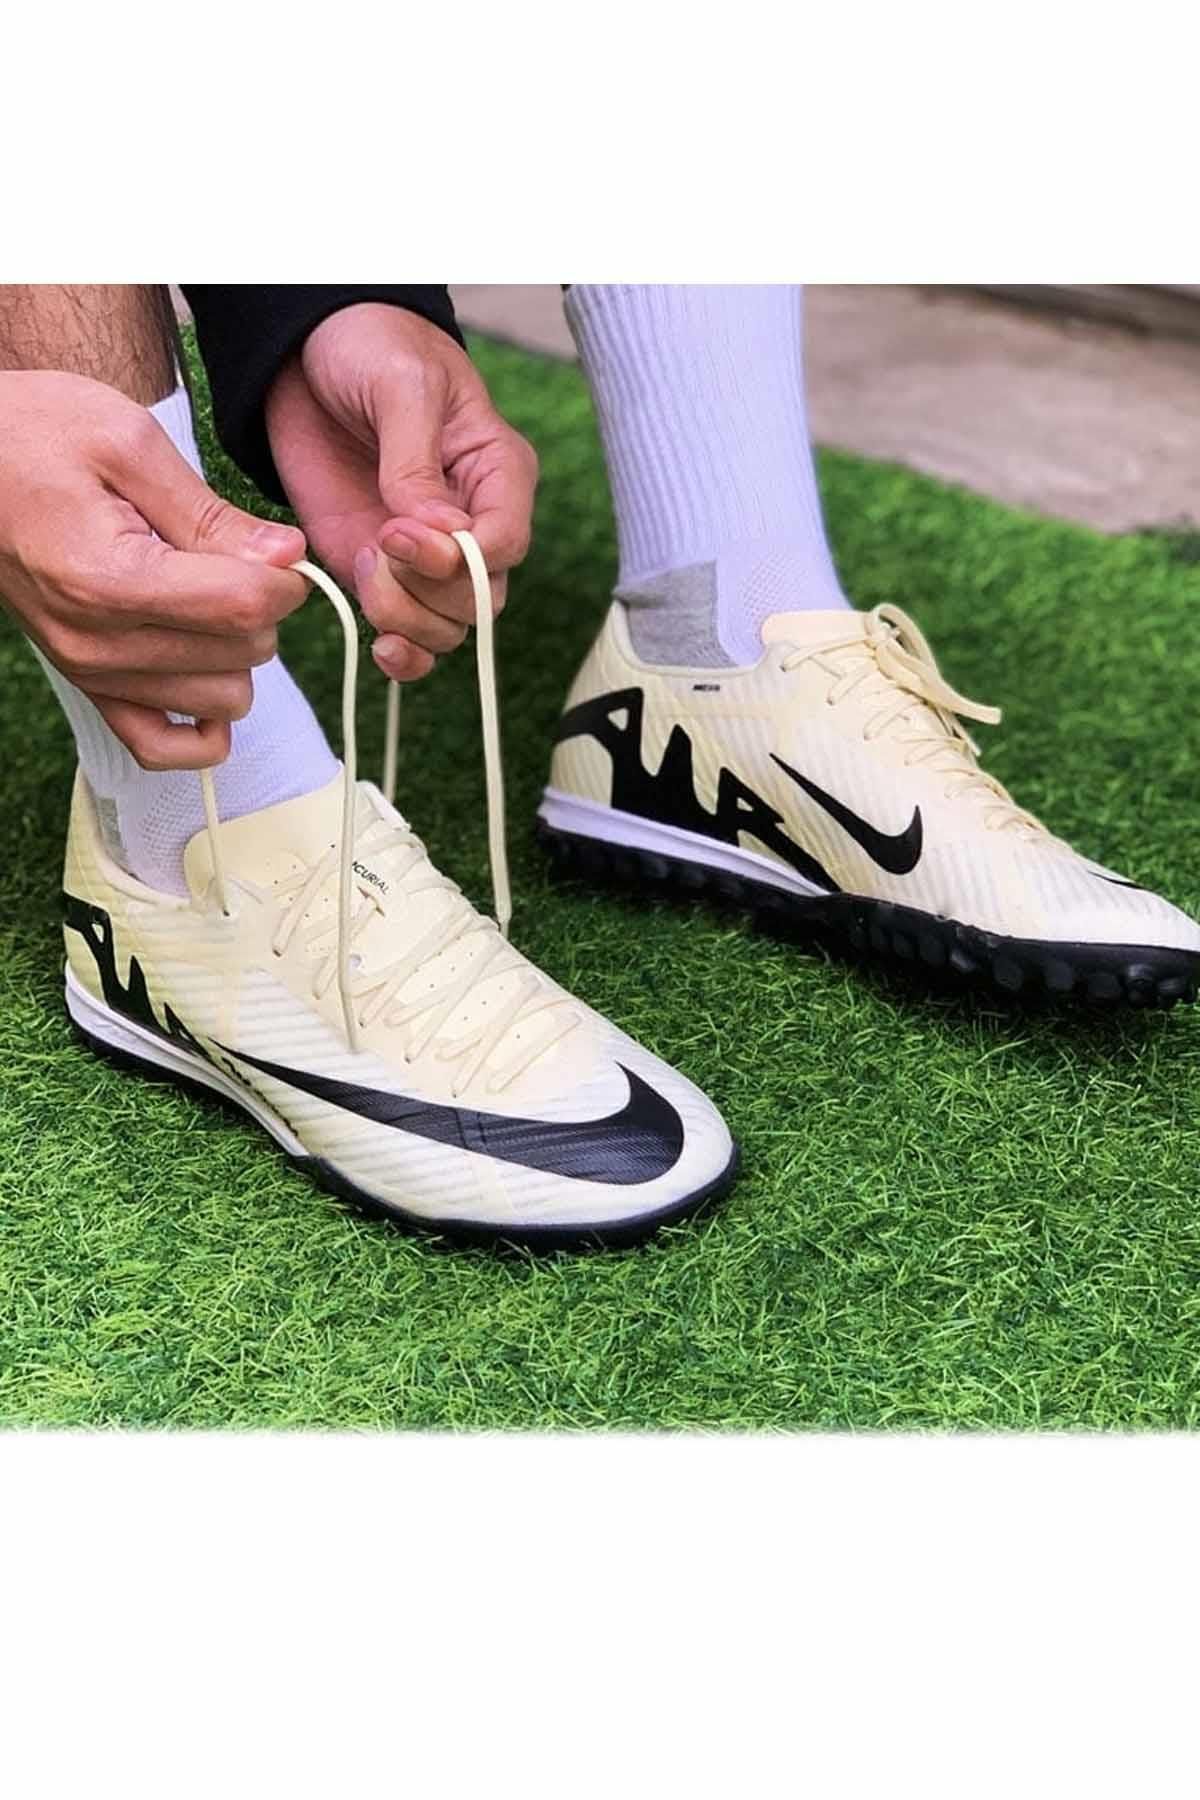 Nike Zoom Vapor 15 TF Yarı pro Erkek Halı Saha Ayakkabı DJ5635-700-Çok Renkli